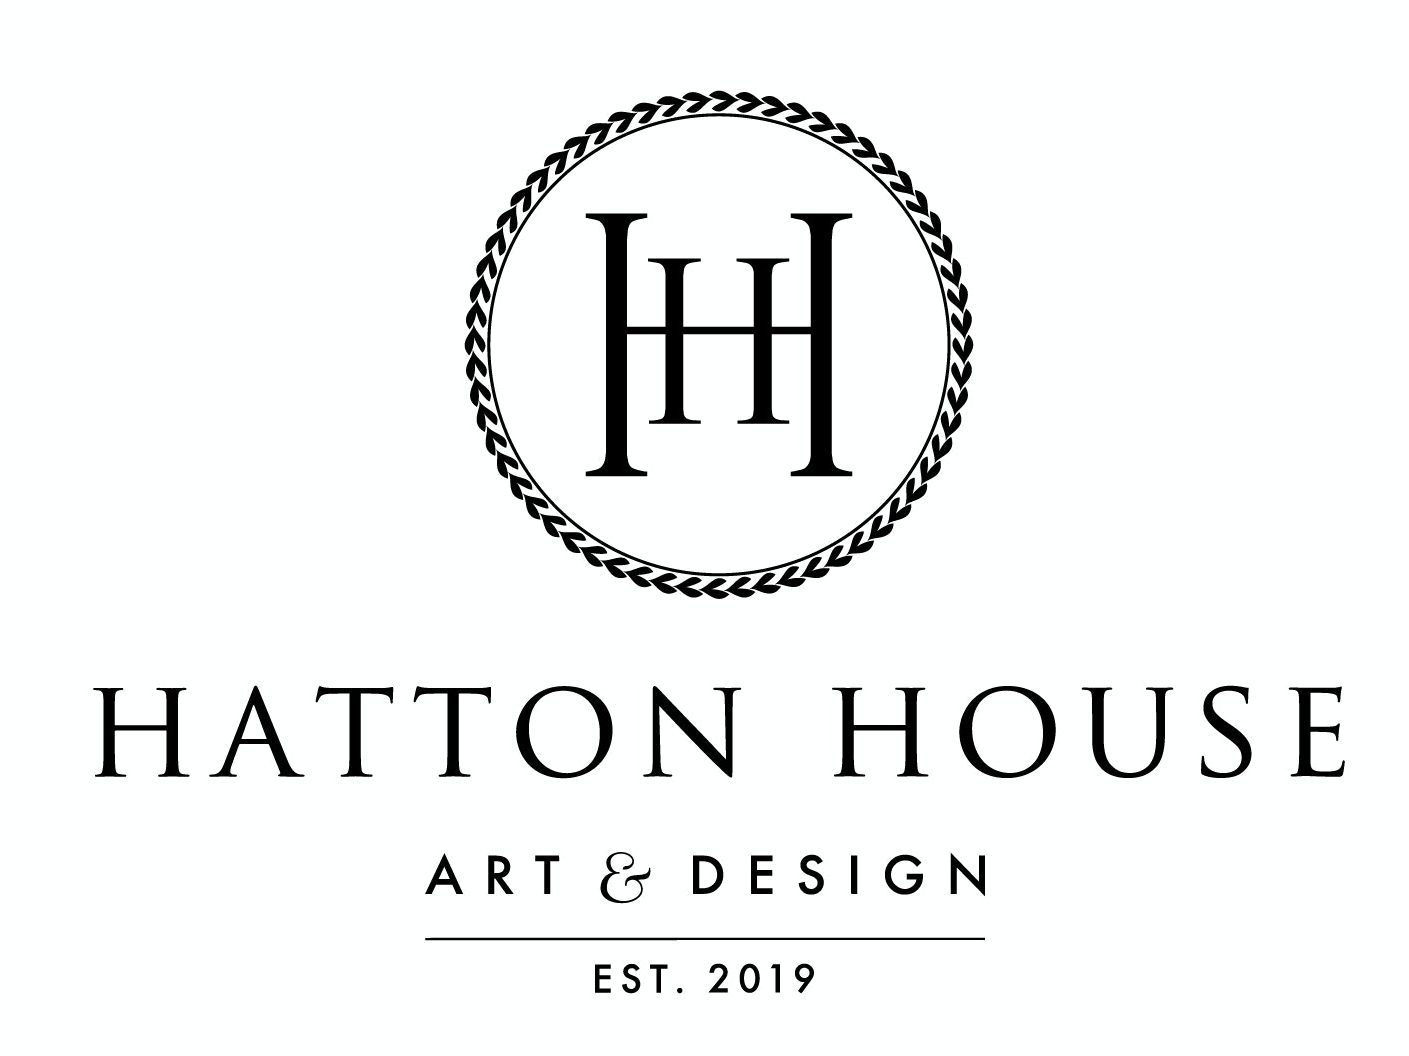 Hatton House Art & Design